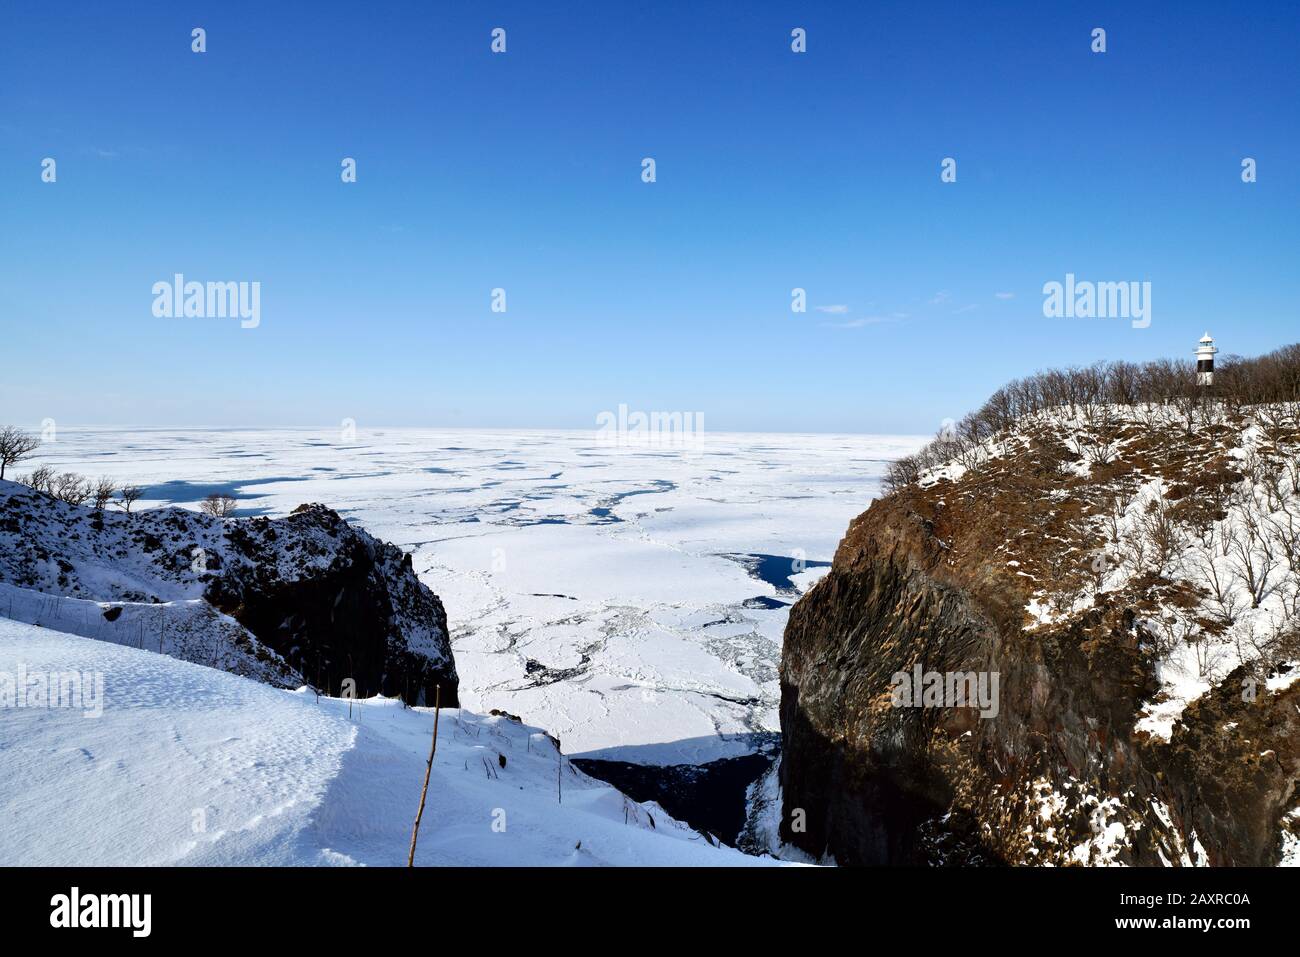 Vue panoramique sur le cap d'utoro, le phare d'utoro et la mer d'okhotsk recouverte de glace et de neige en hiver, Shiretoko, Hokkaido, Japon Banque D'Images